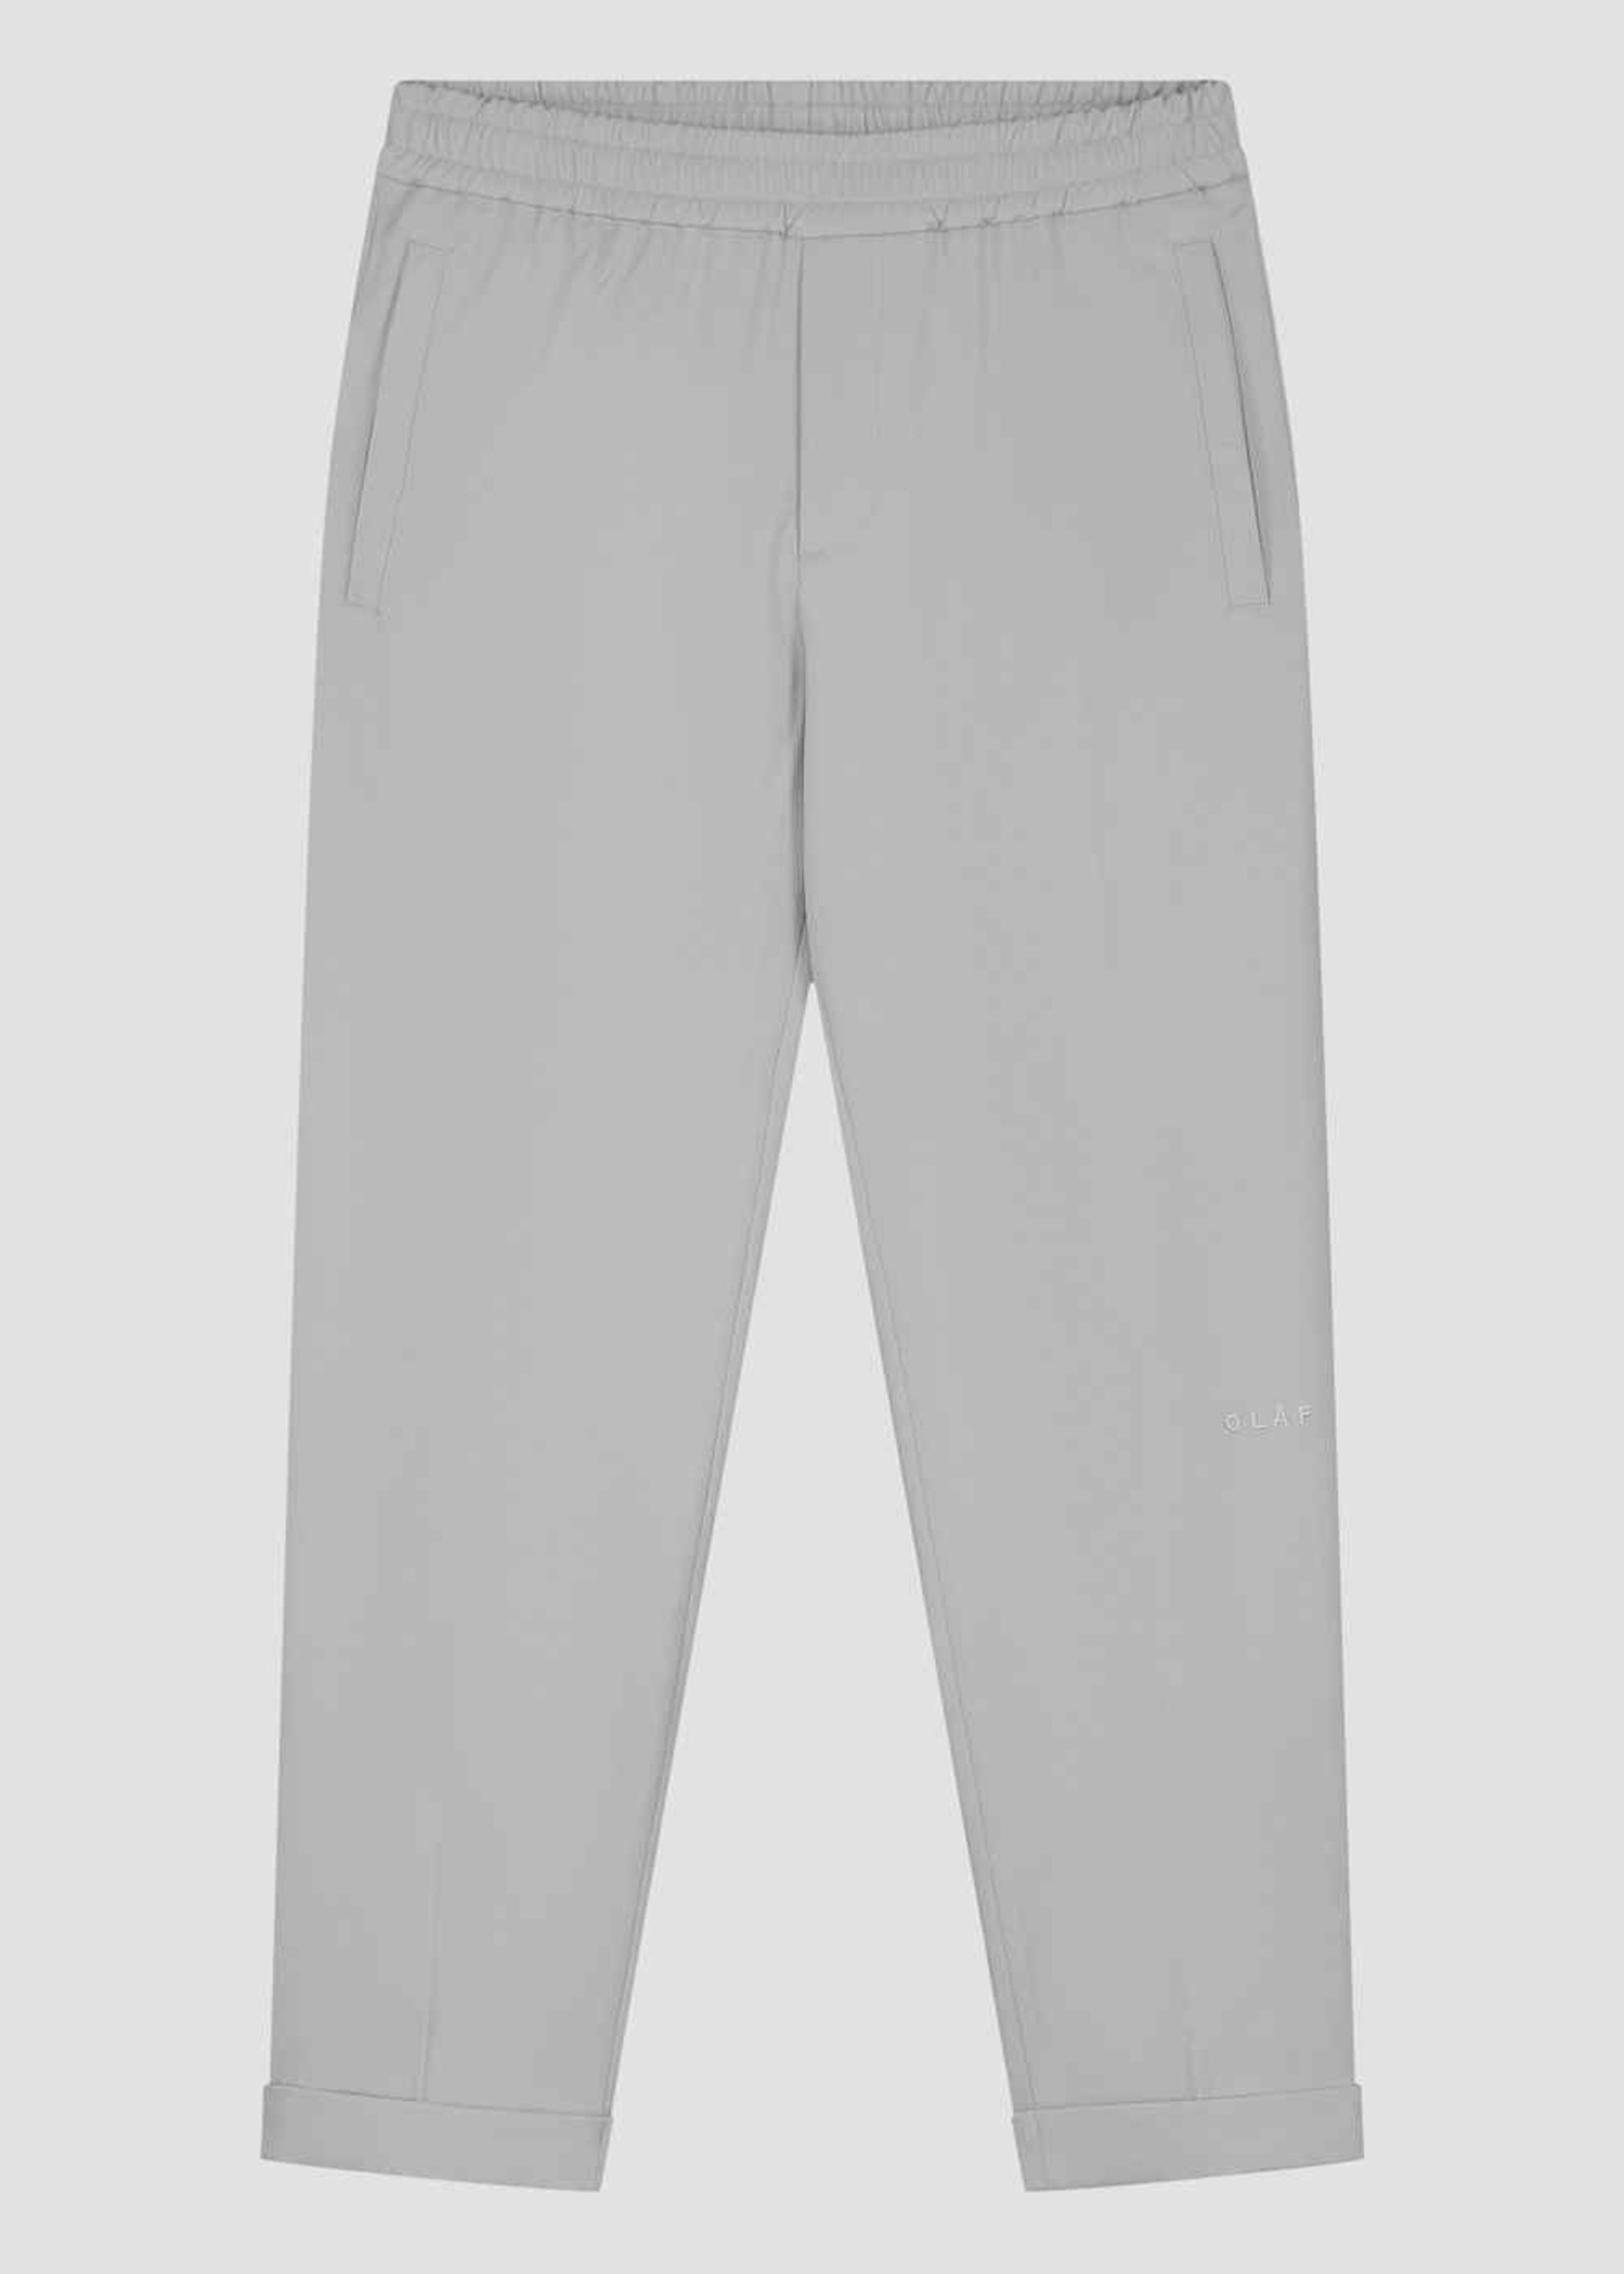 Olaf Hussein Olaf slim elastic trousers Light grey